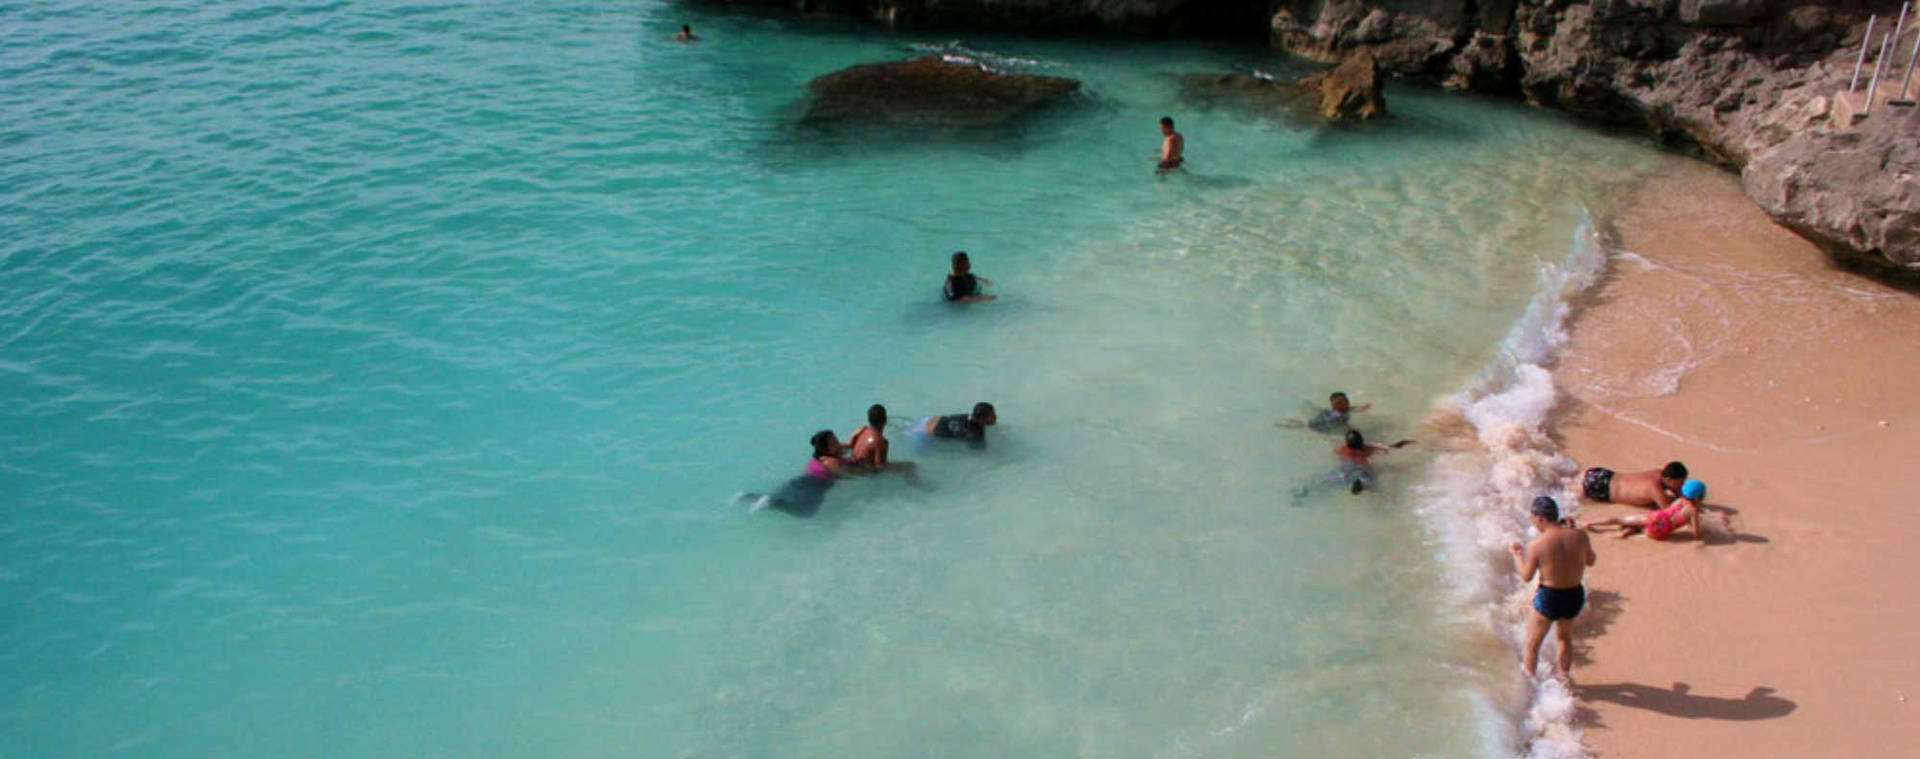 Micronesia People Swimming Beach Wallpaper